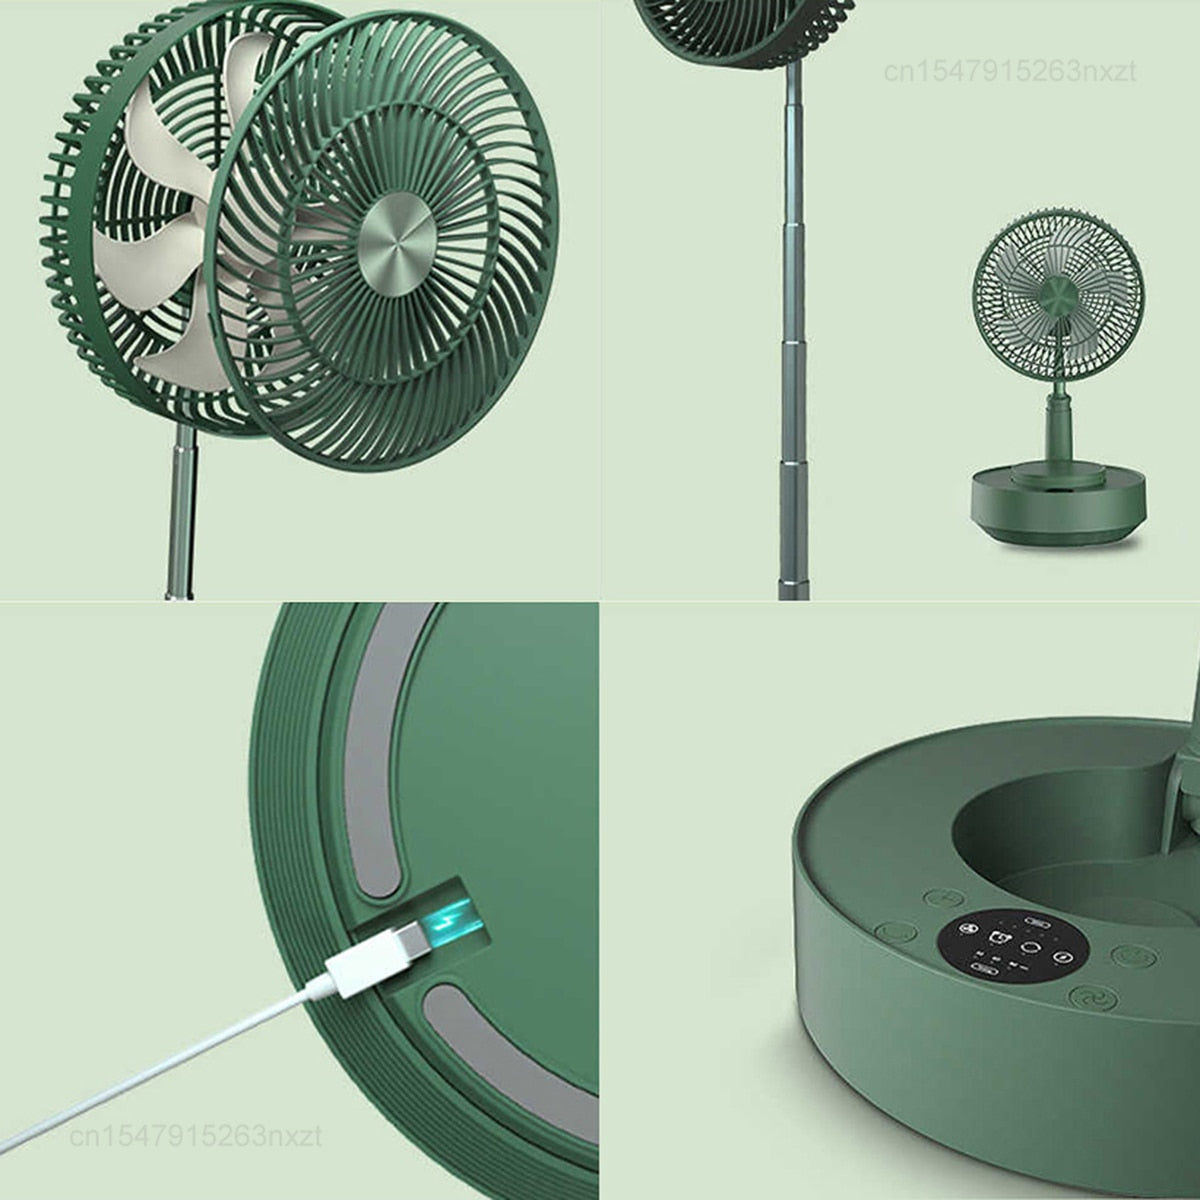 Electric Folding Fan